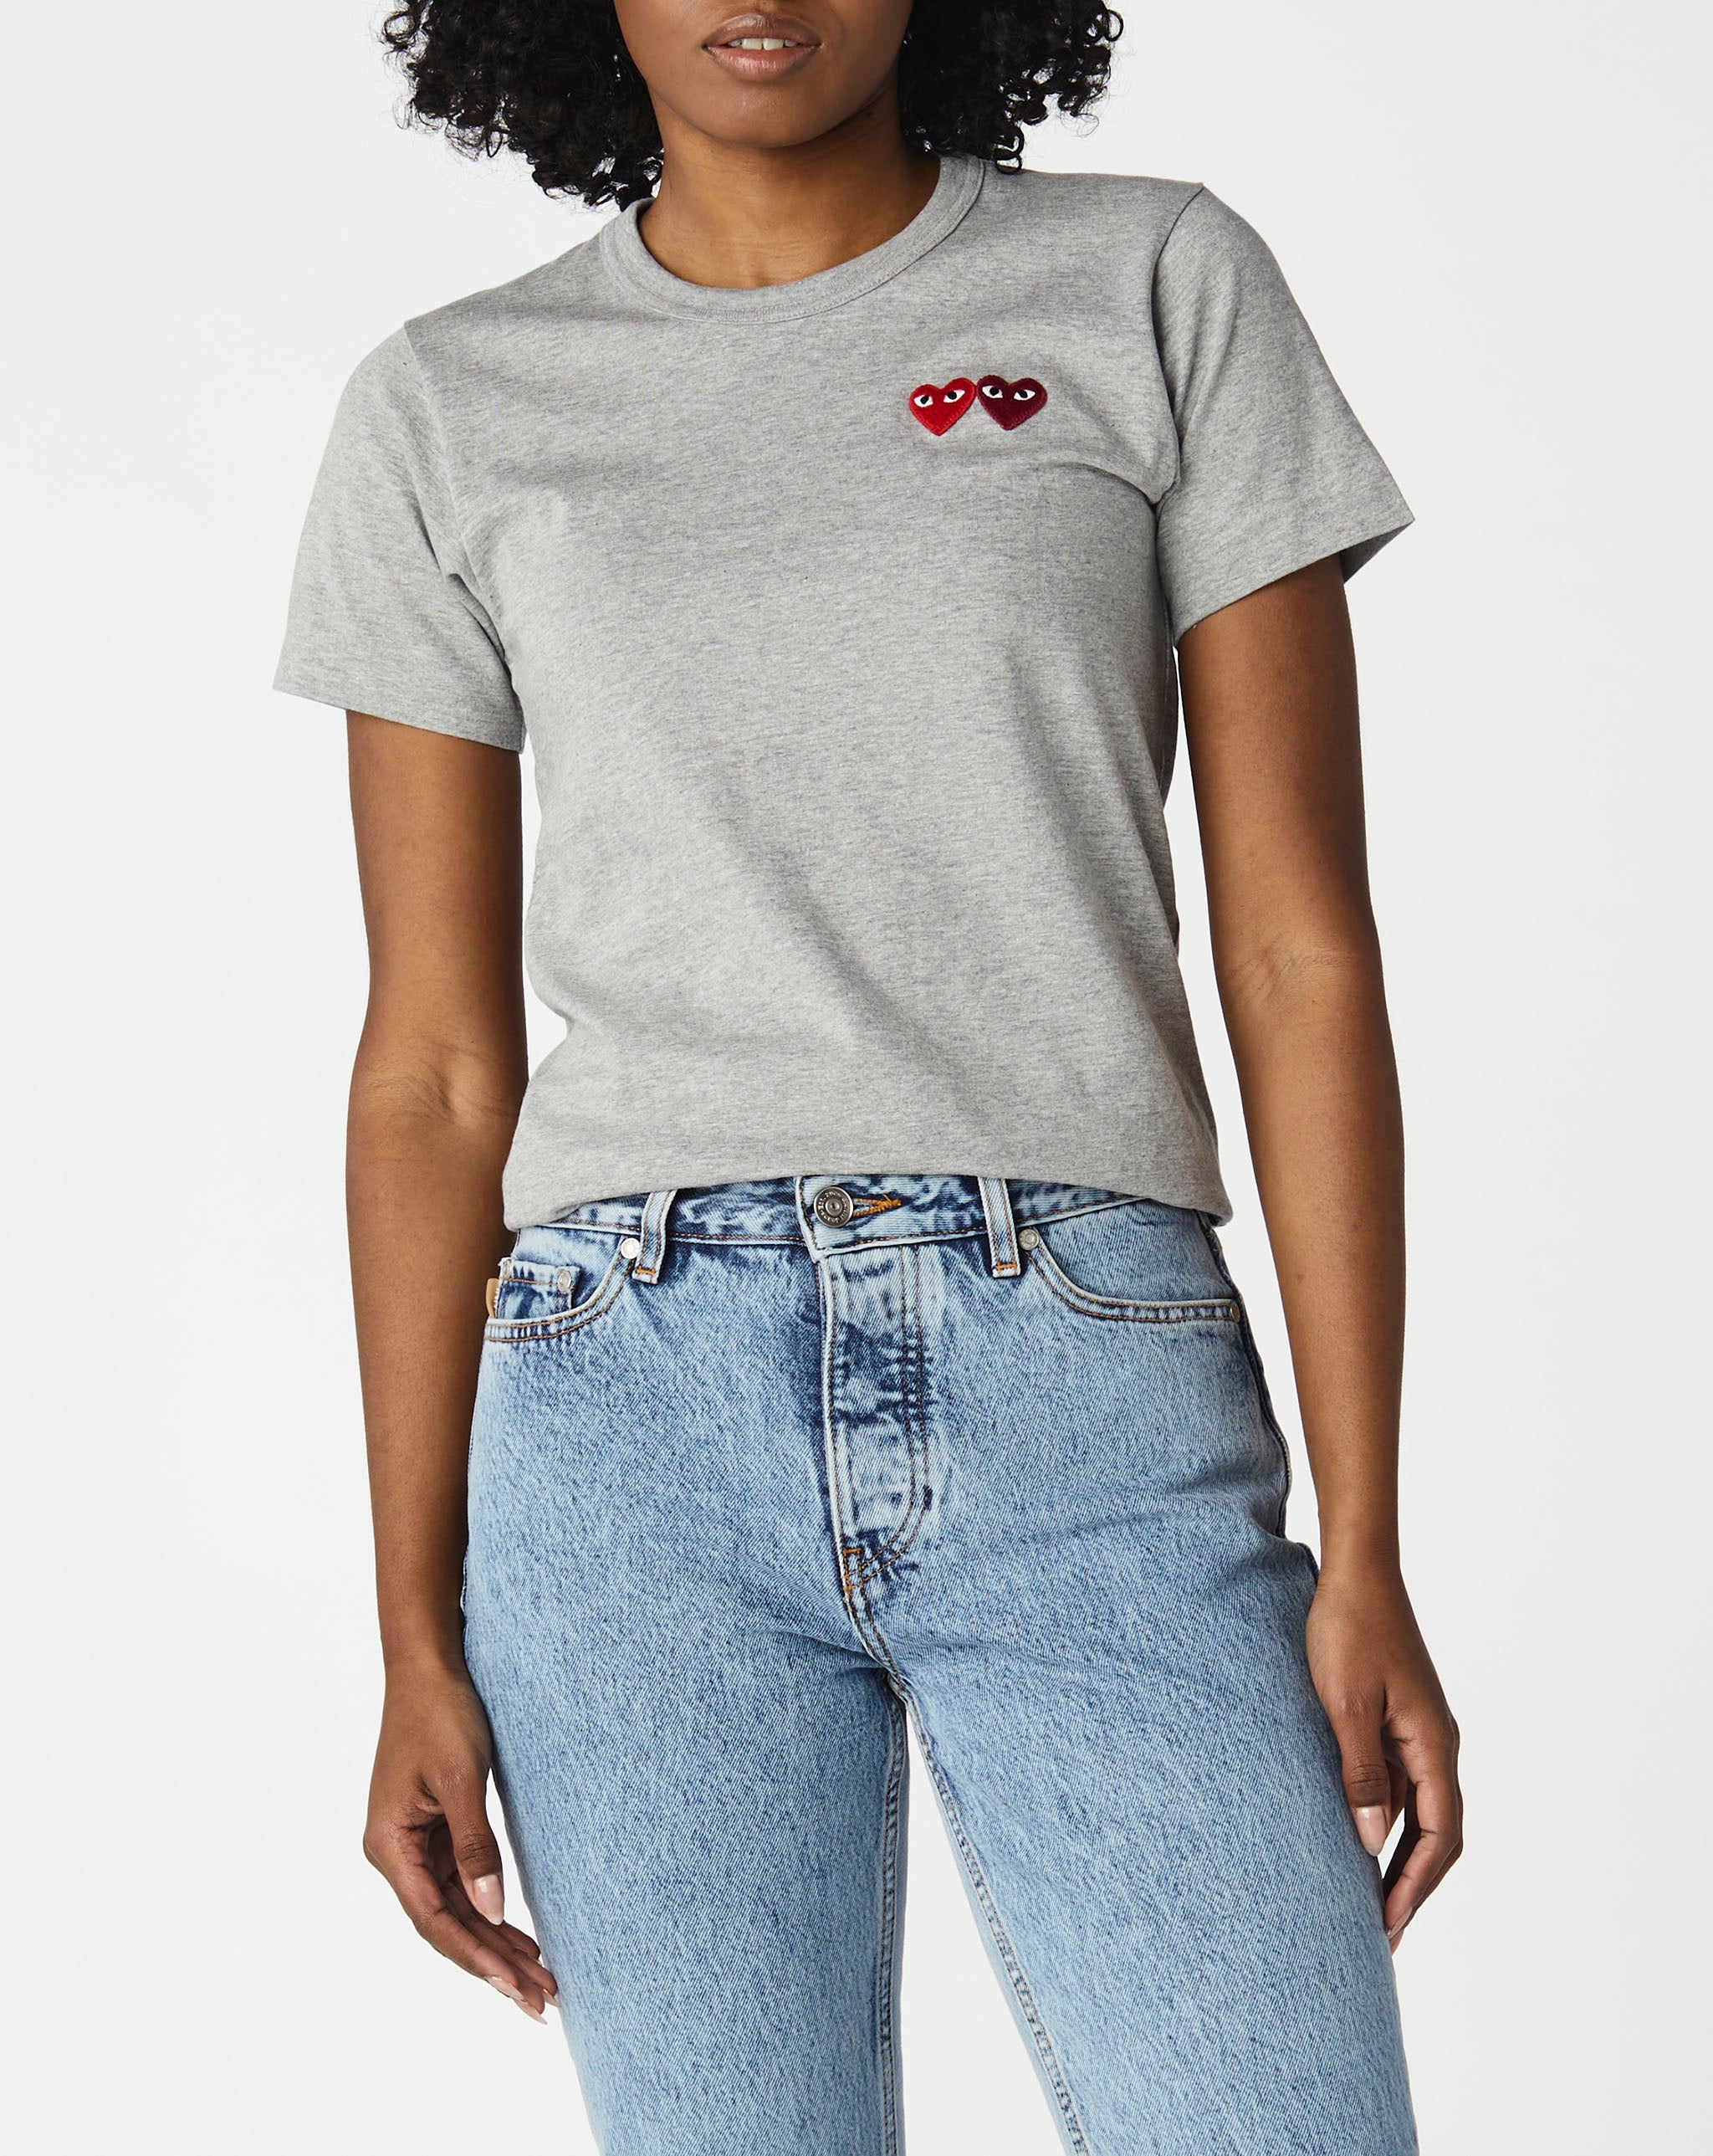 Womens Heart T-Shirt Women's Double Heart T-Shirt  - Cheap Urlfreeze Jordan outlet